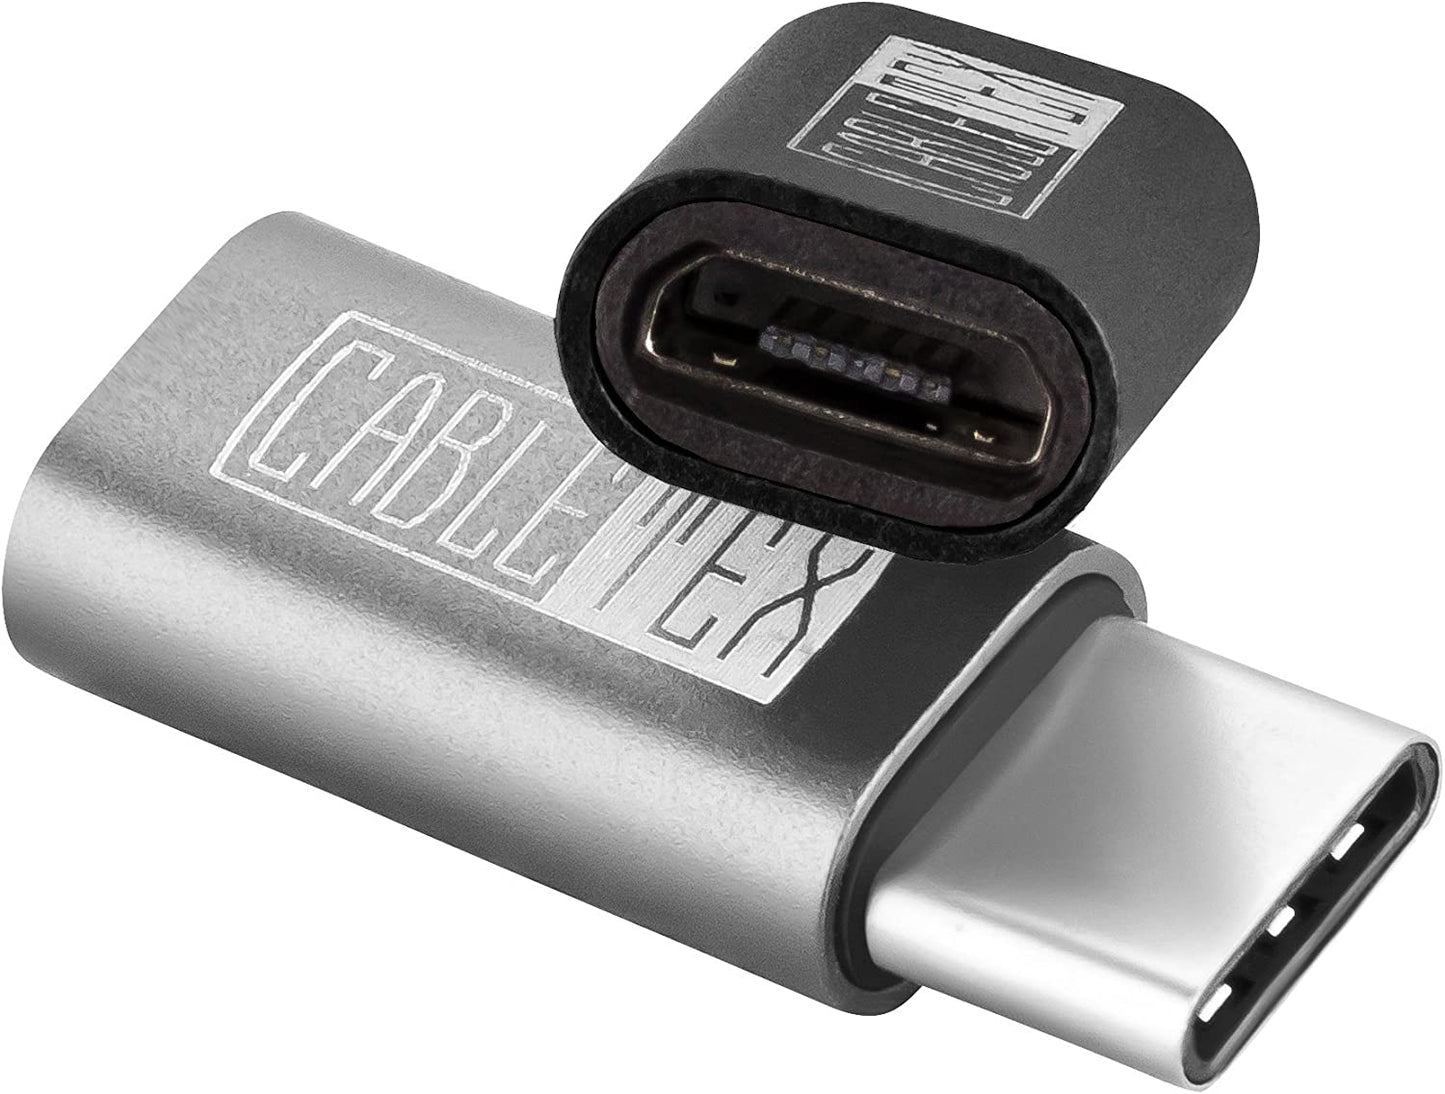 Micro USB zu USB-C Adapter Set, 2 Stück